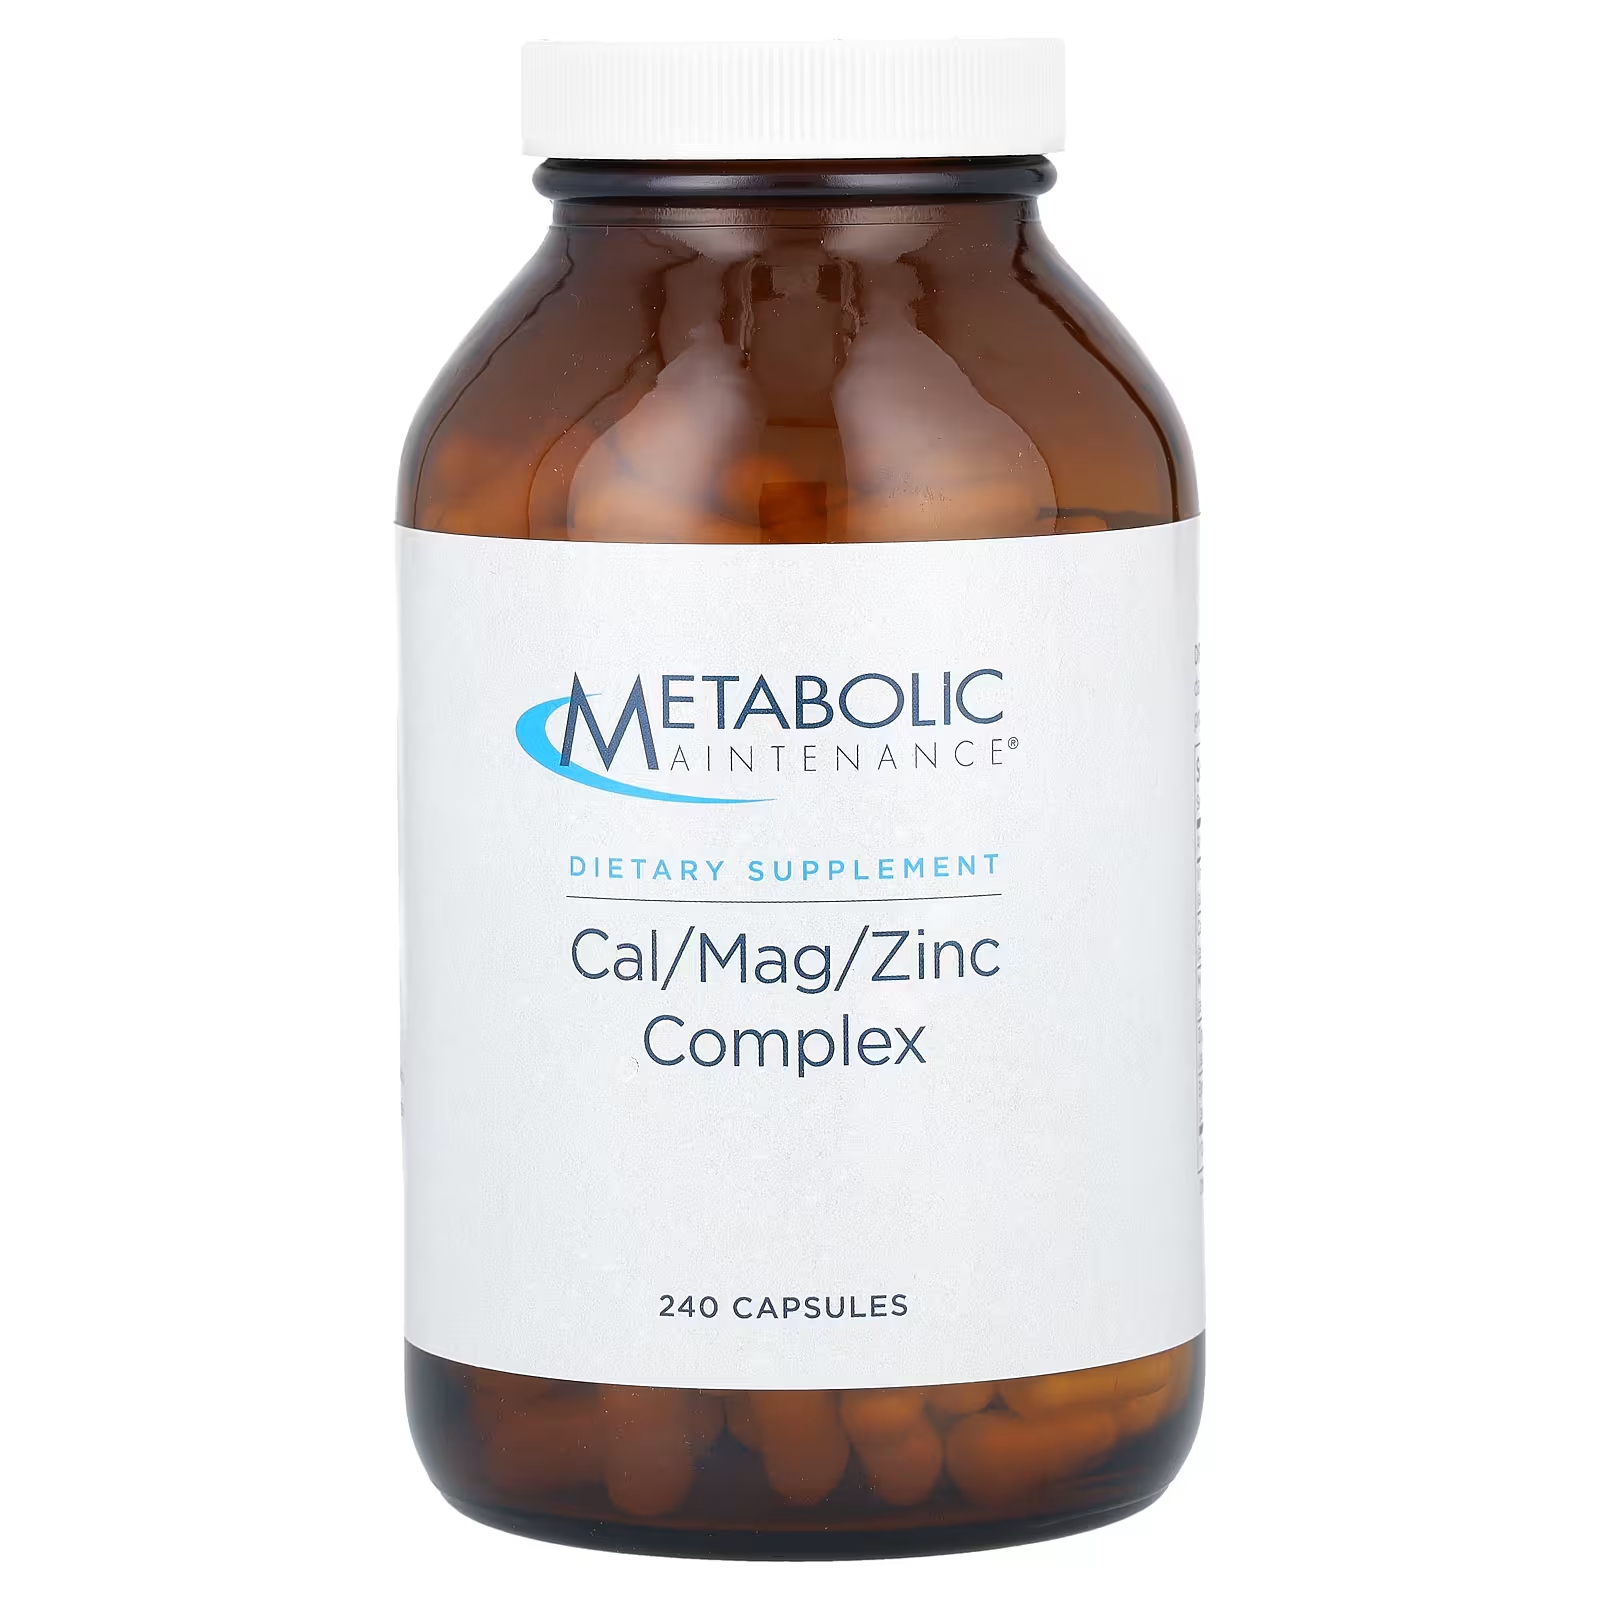 Метаболический комплекс Metabolic Maintenance Cal / Mag / Zinc, 240 капсул metabolic maintenance cal mag plus с витамином d и витамином k2 mk 7 180 капсул